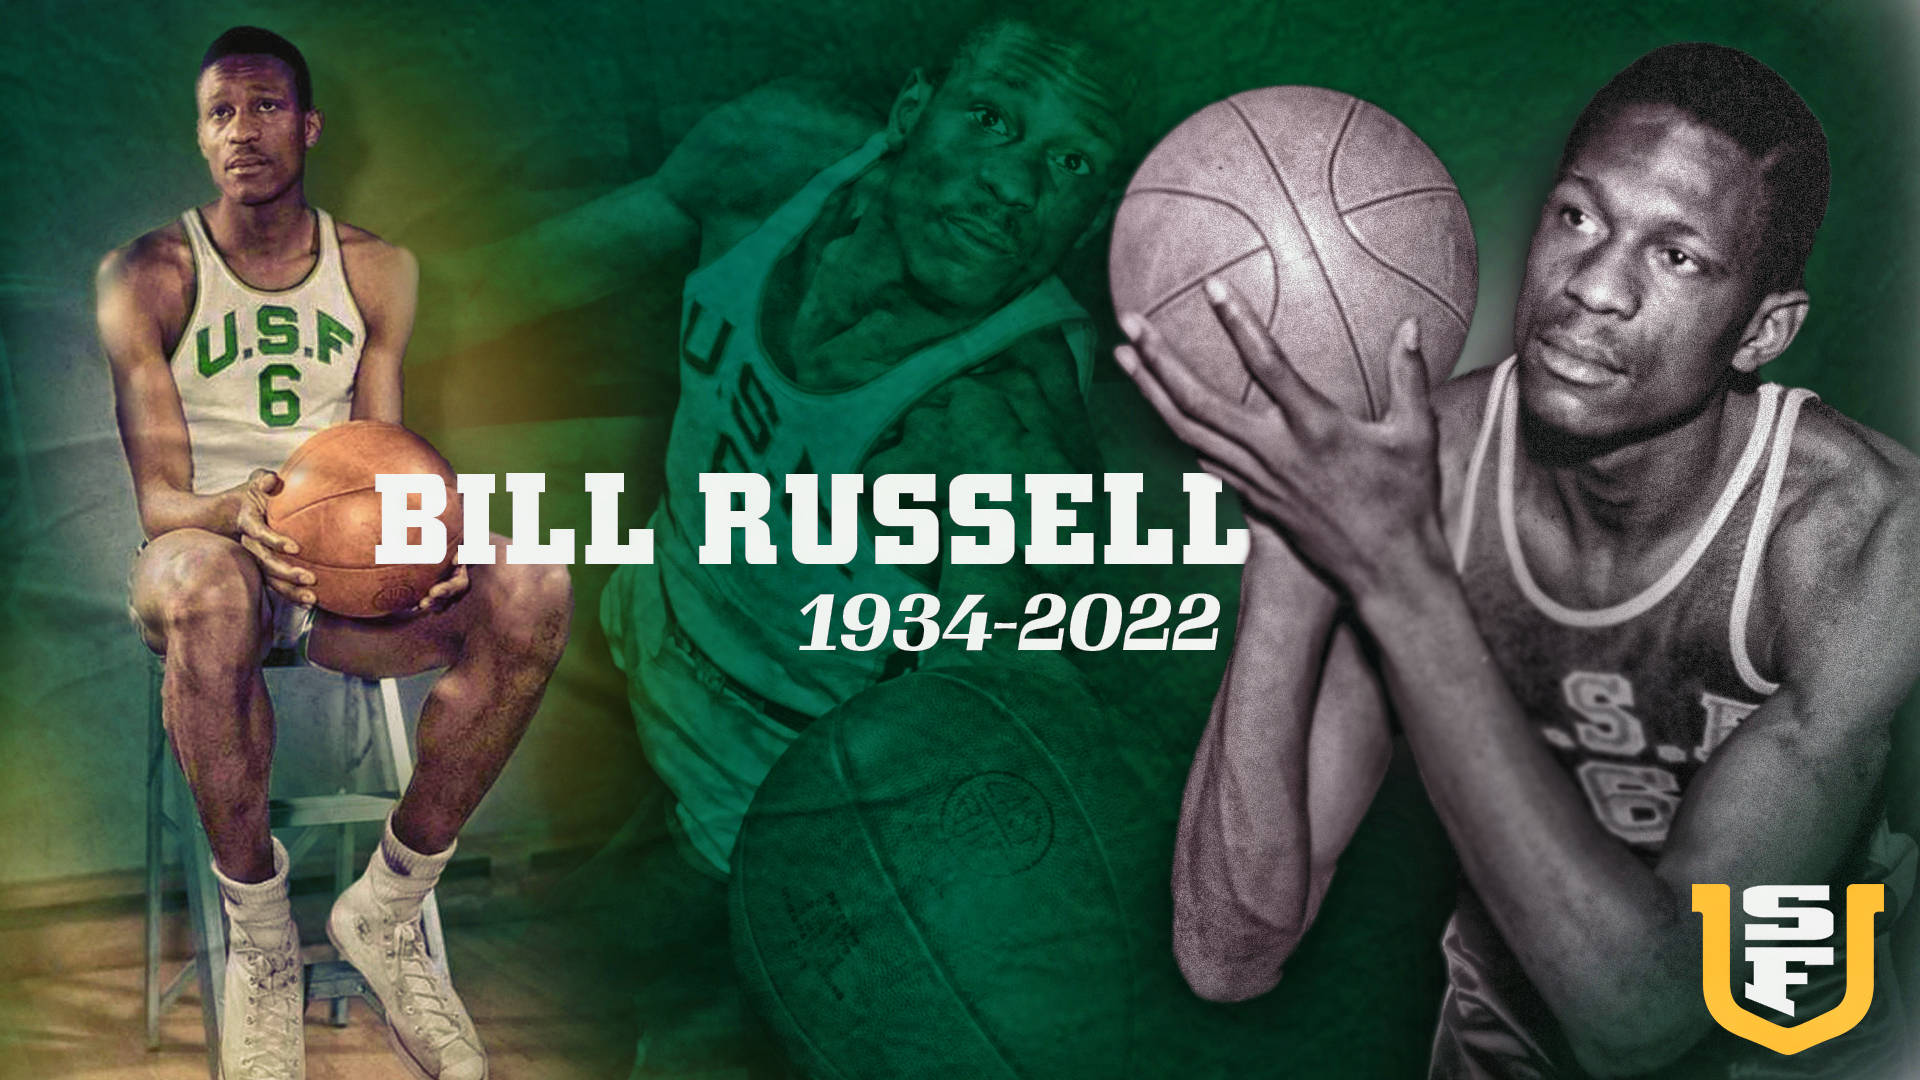 Retratoconmemorativo De Bill Russell En La Usf. Fondo de pantalla